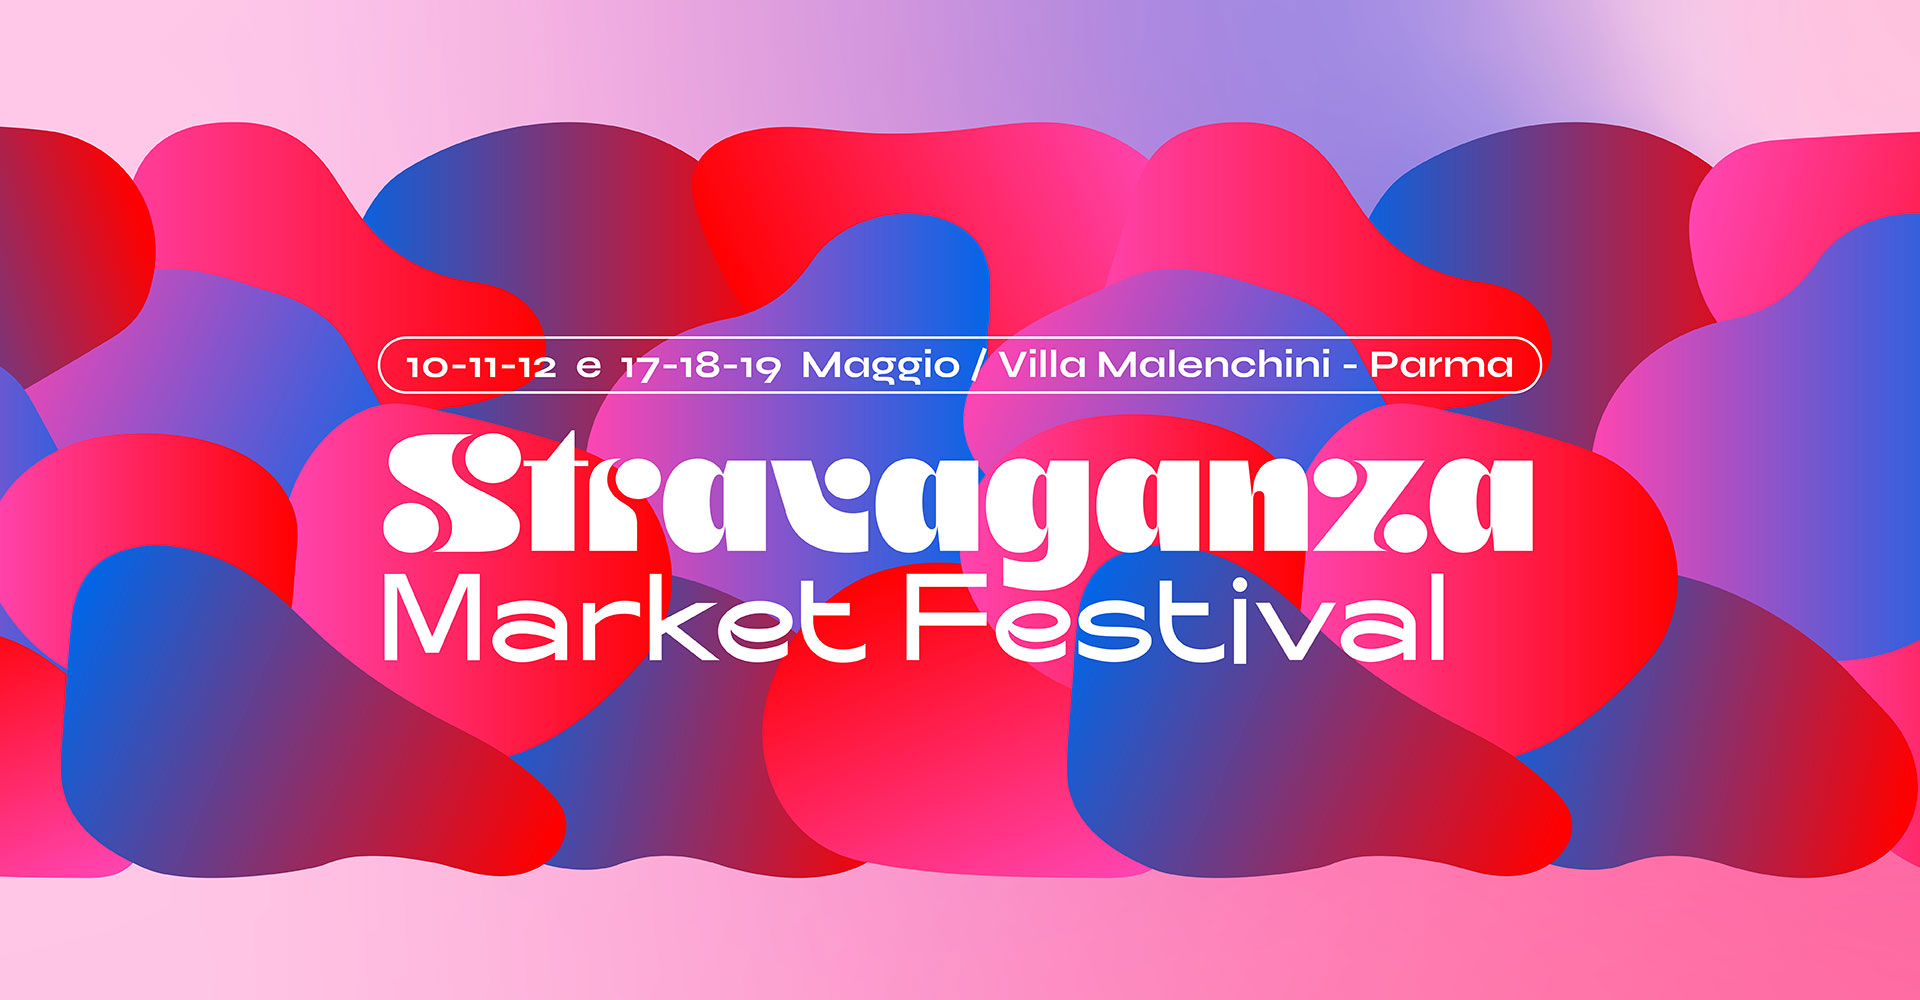 Stravaganza Market Festival - Cosplay & De Gustibus